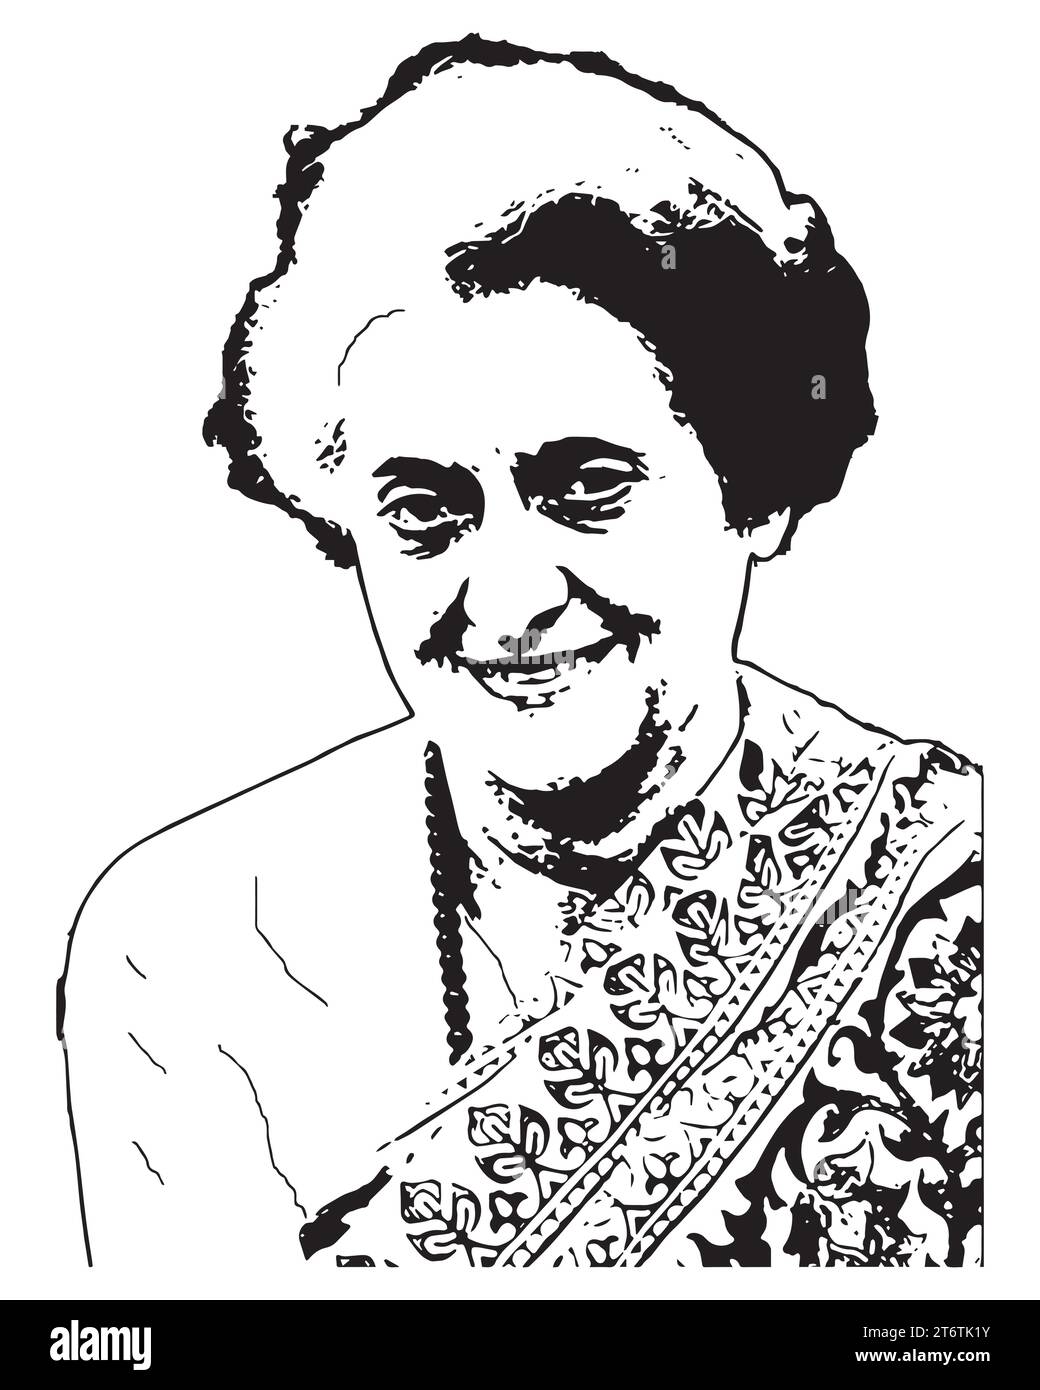 Indira Gandhi indischer Politiker Vektor-Illustration abstraktes Schwarzweiß bearbeitbares Bild Stock Vektor